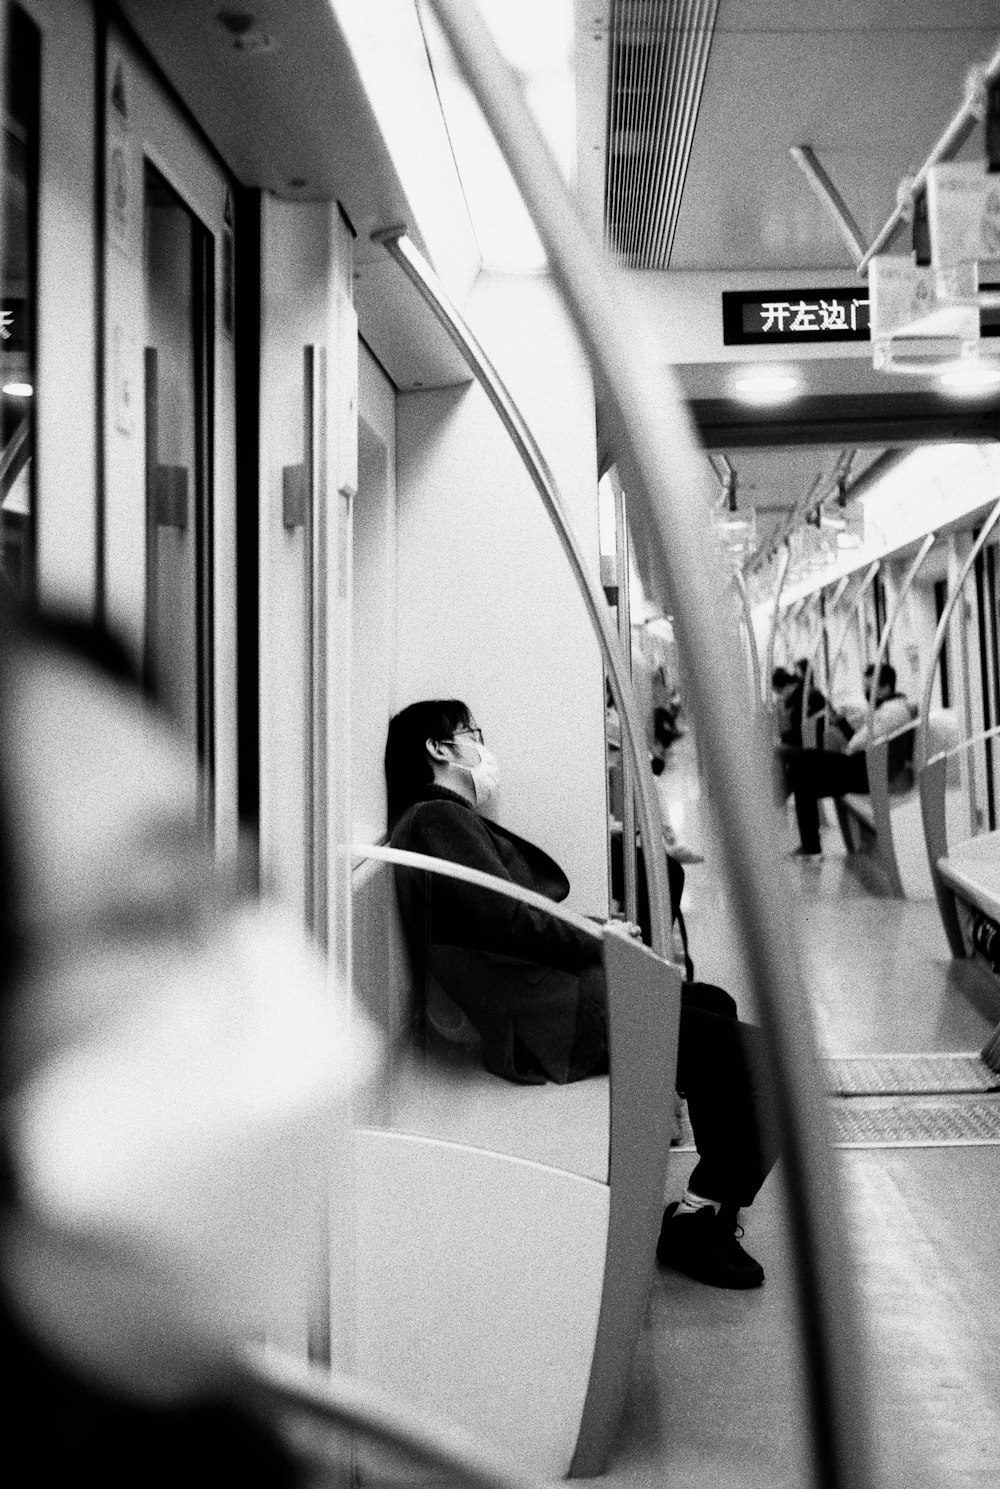 電車に座っている黒いジャケットを着た女性のグレースケール写真